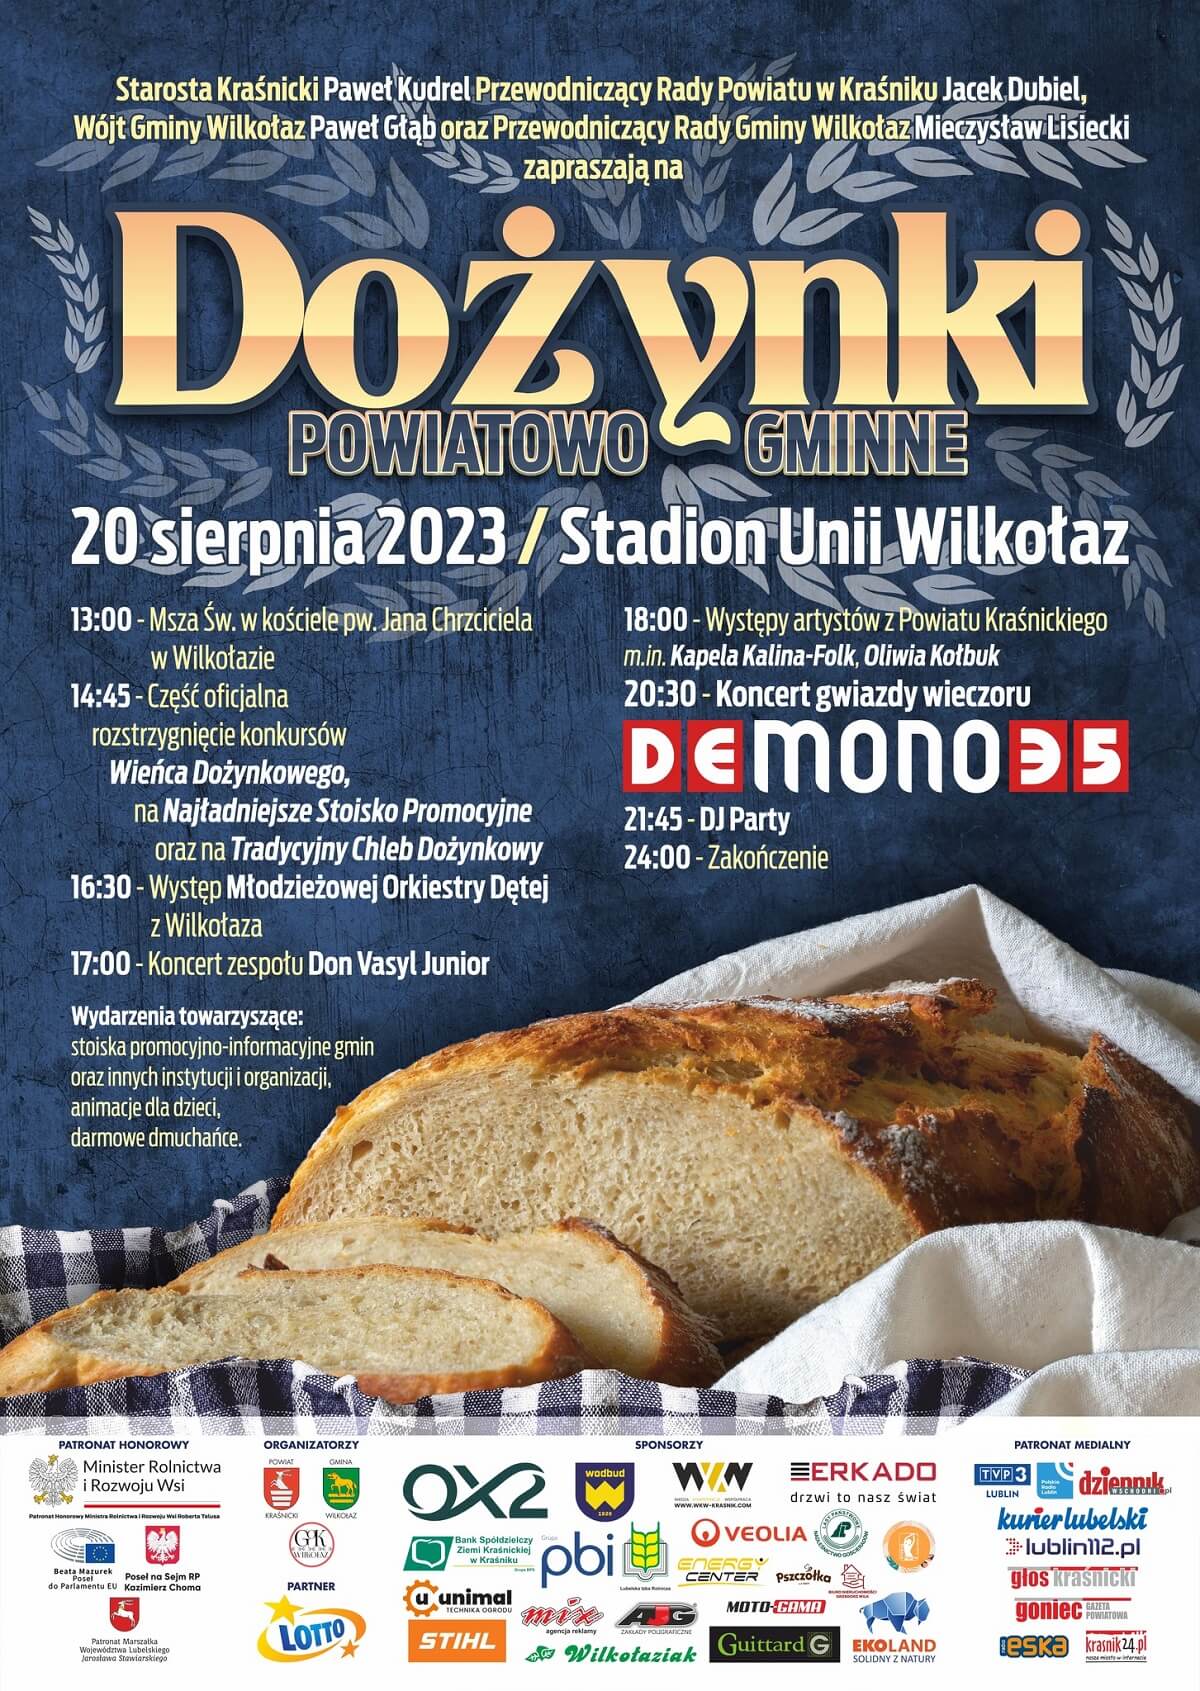 Dożynki Powiatu Kraśnickiego w Wilkołazie 2023 - plakat, program wydarzenia